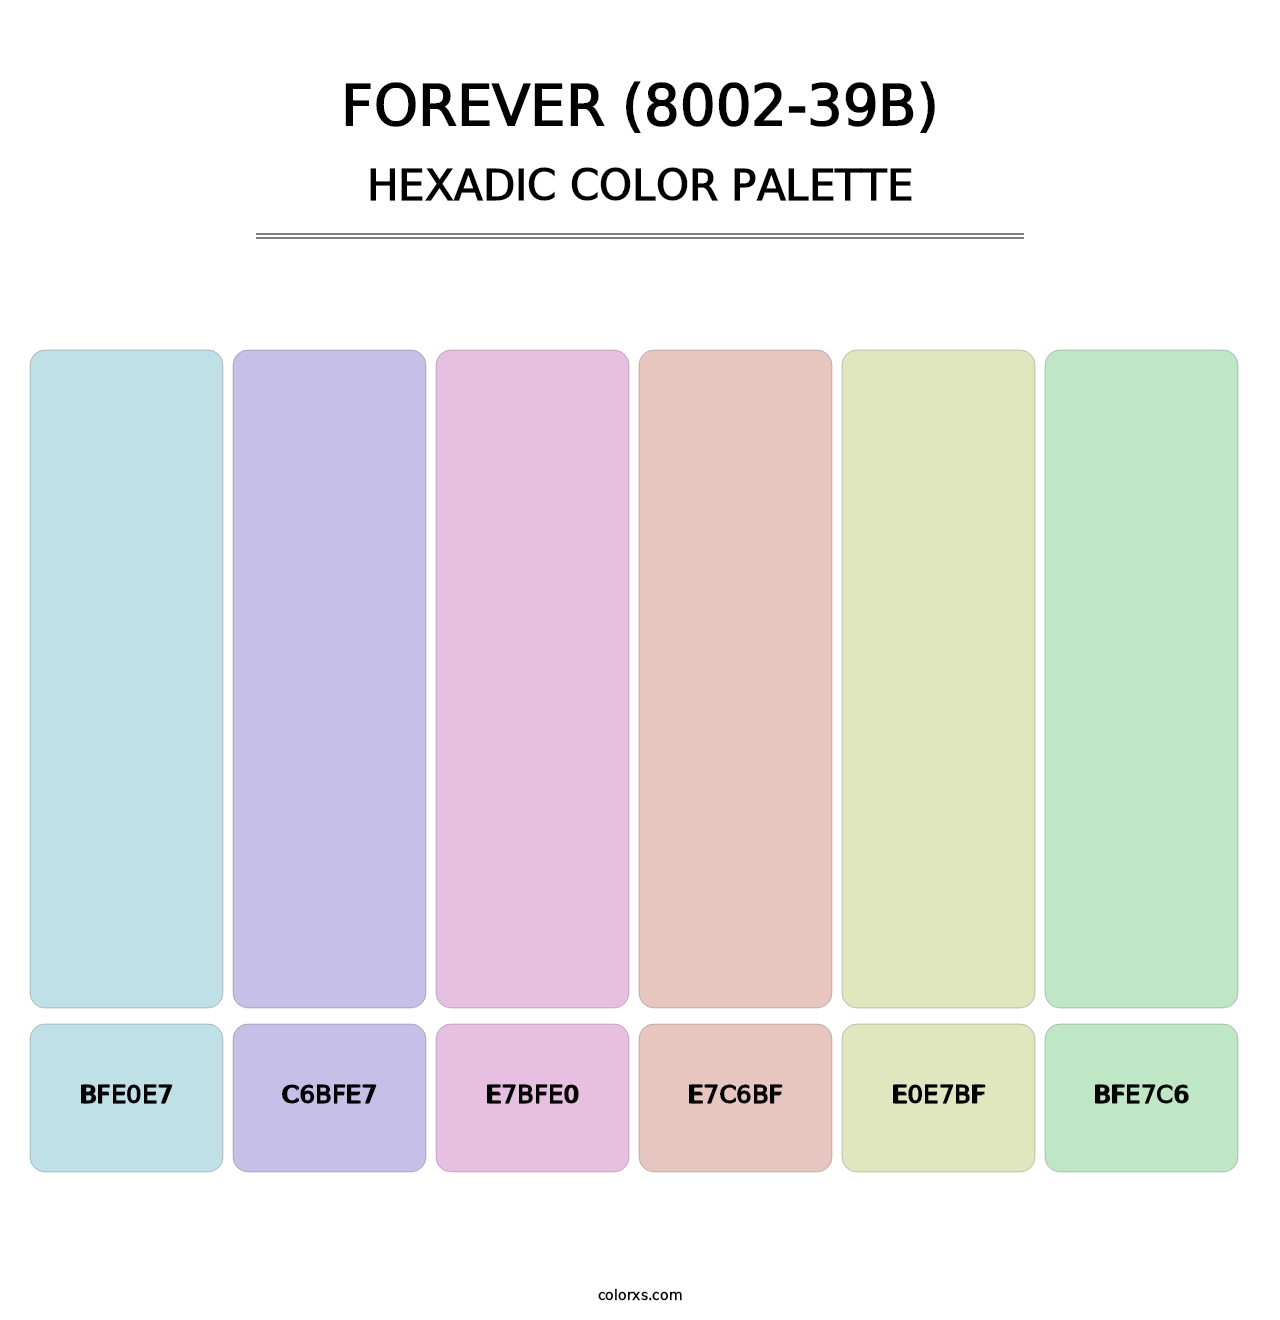 Forever (8002-39B) - Hexadic Color Palette